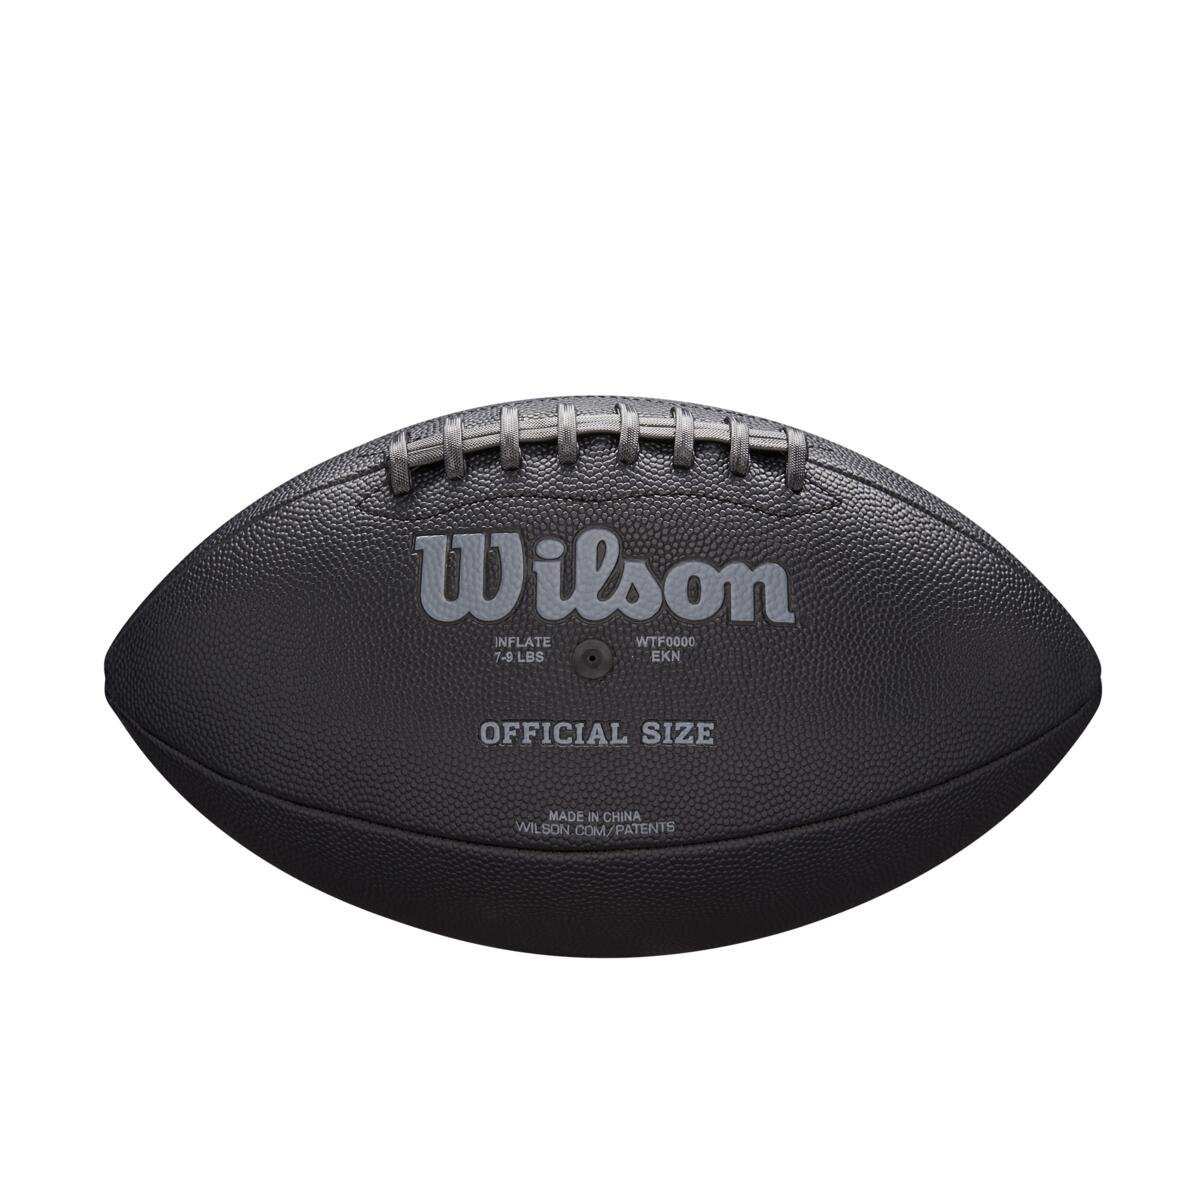 Lopta Wilson NFL Jet Black Sz Fb J - čierna